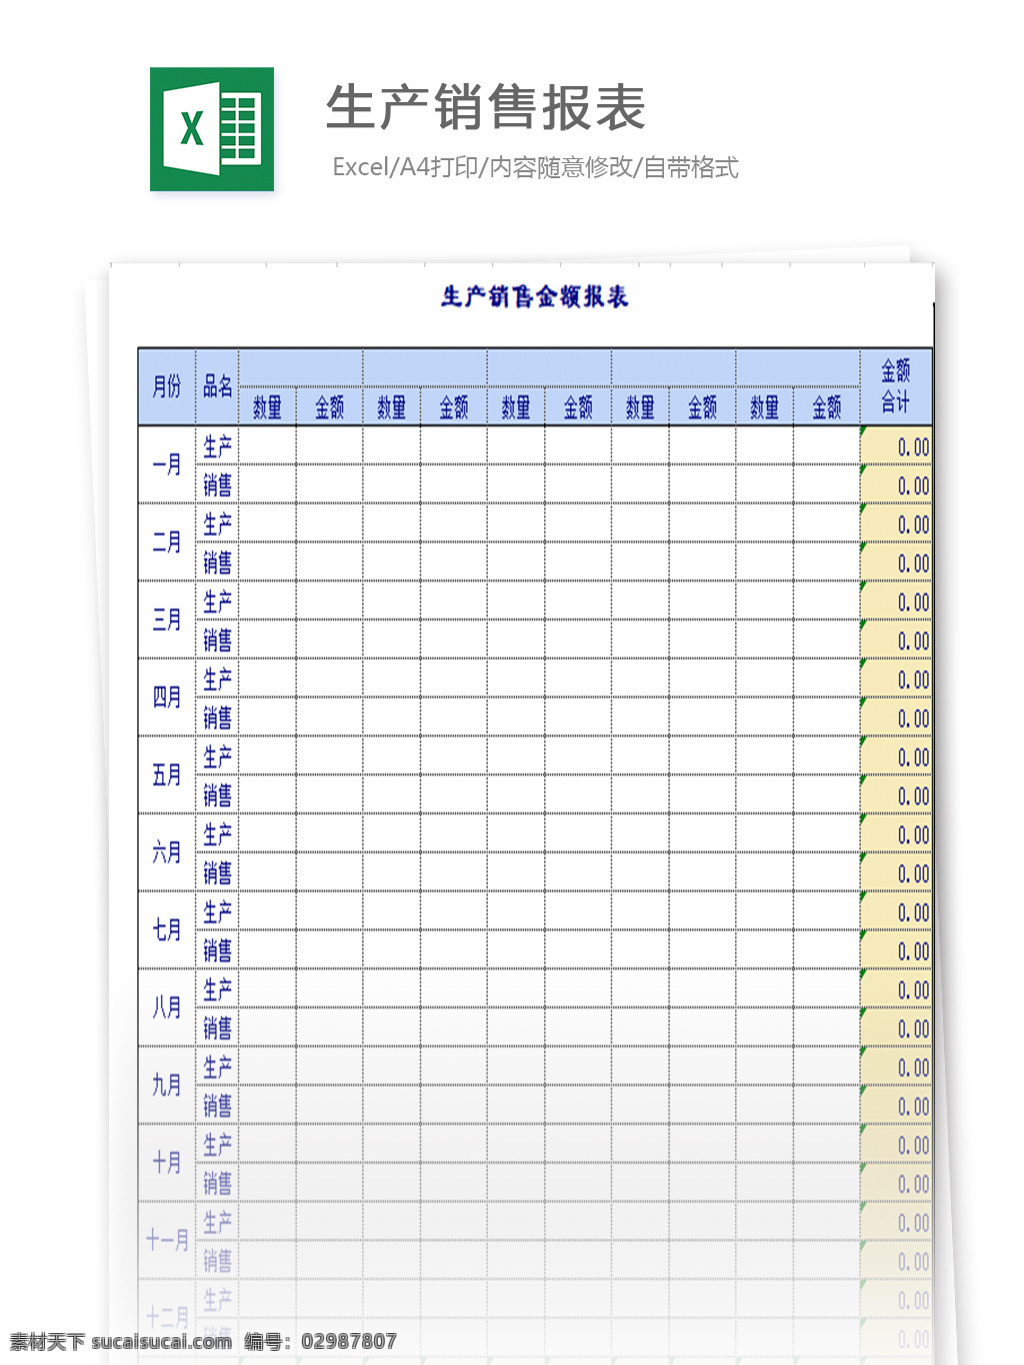 生产销售报表 表格 表格模板 表格设计 图表 生产销售单 报表